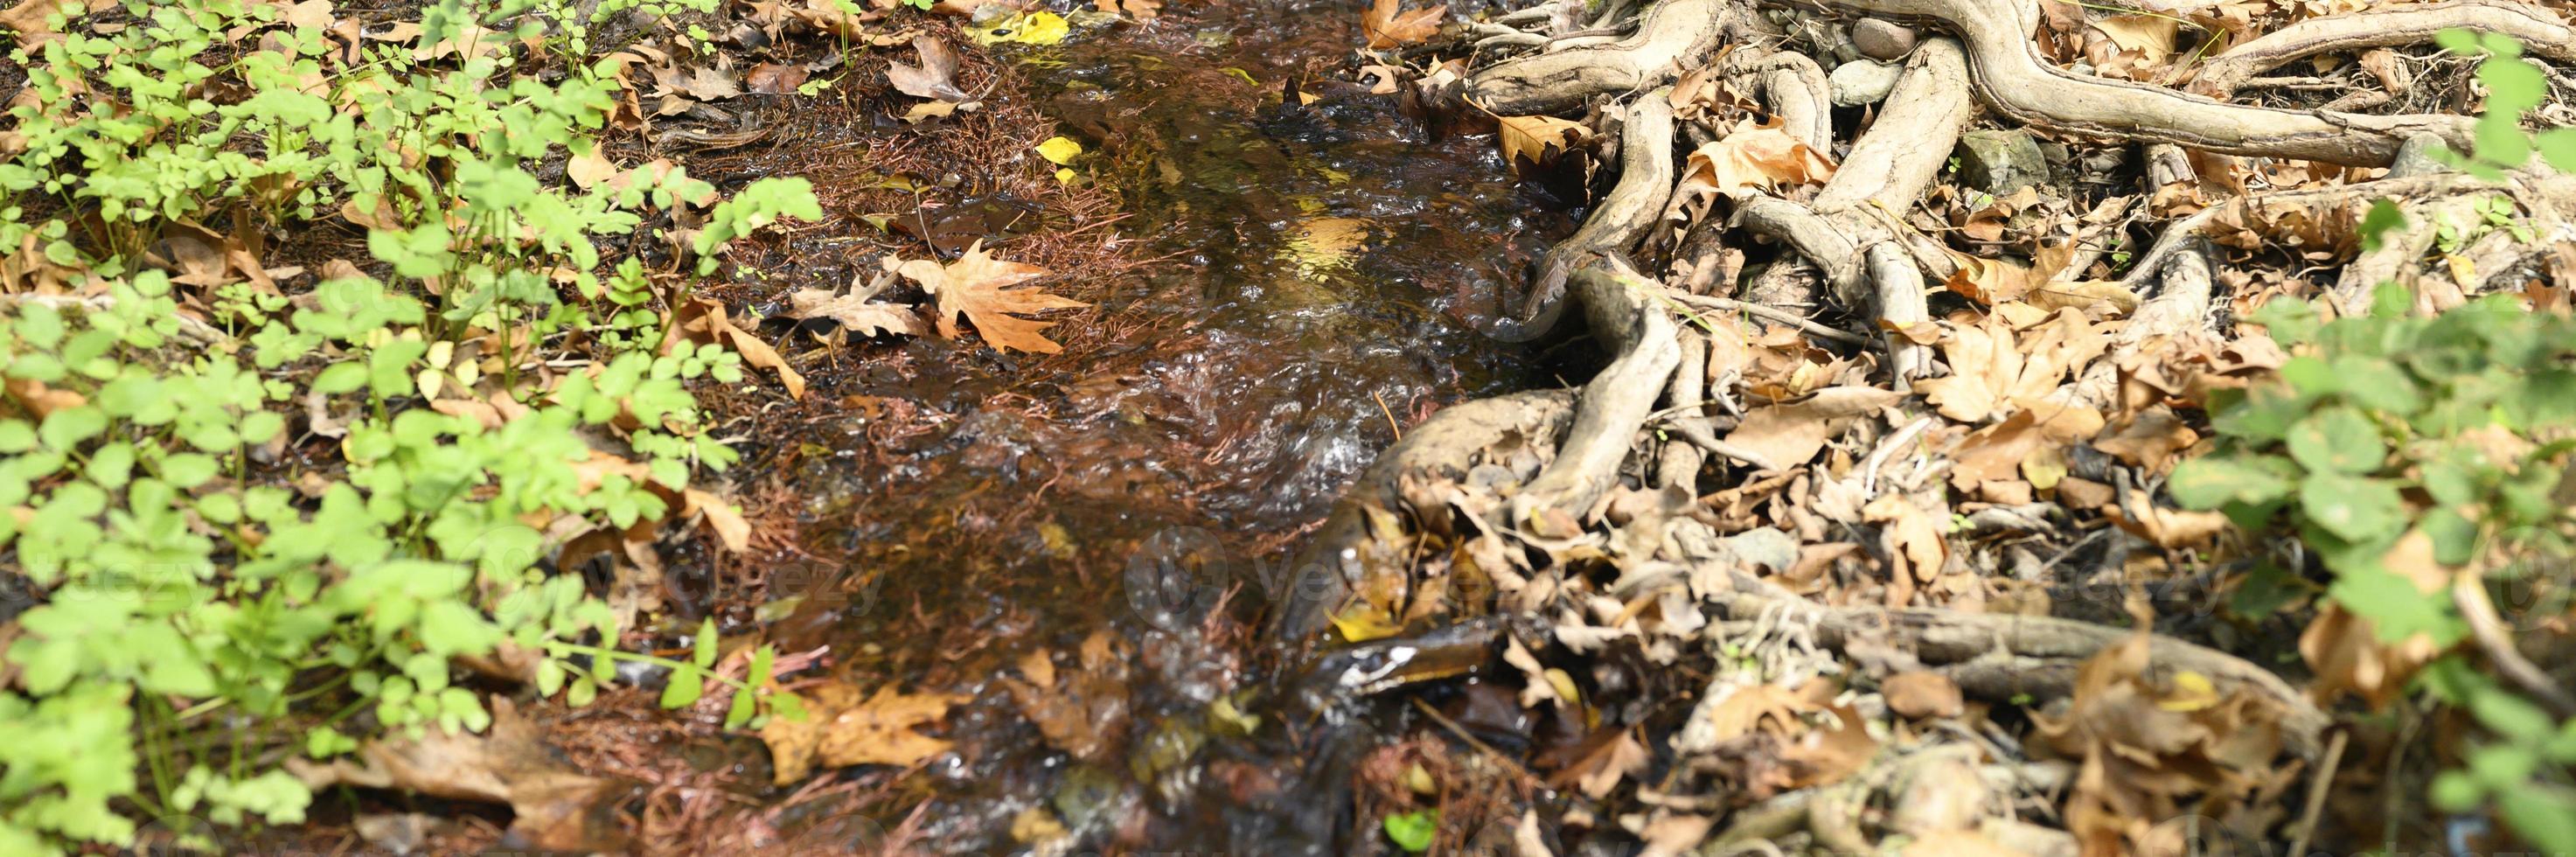 un ruisseau qui traverse les racines nues des arbres dans une falaise rocheuse et les feuilles d'automne tombées photo